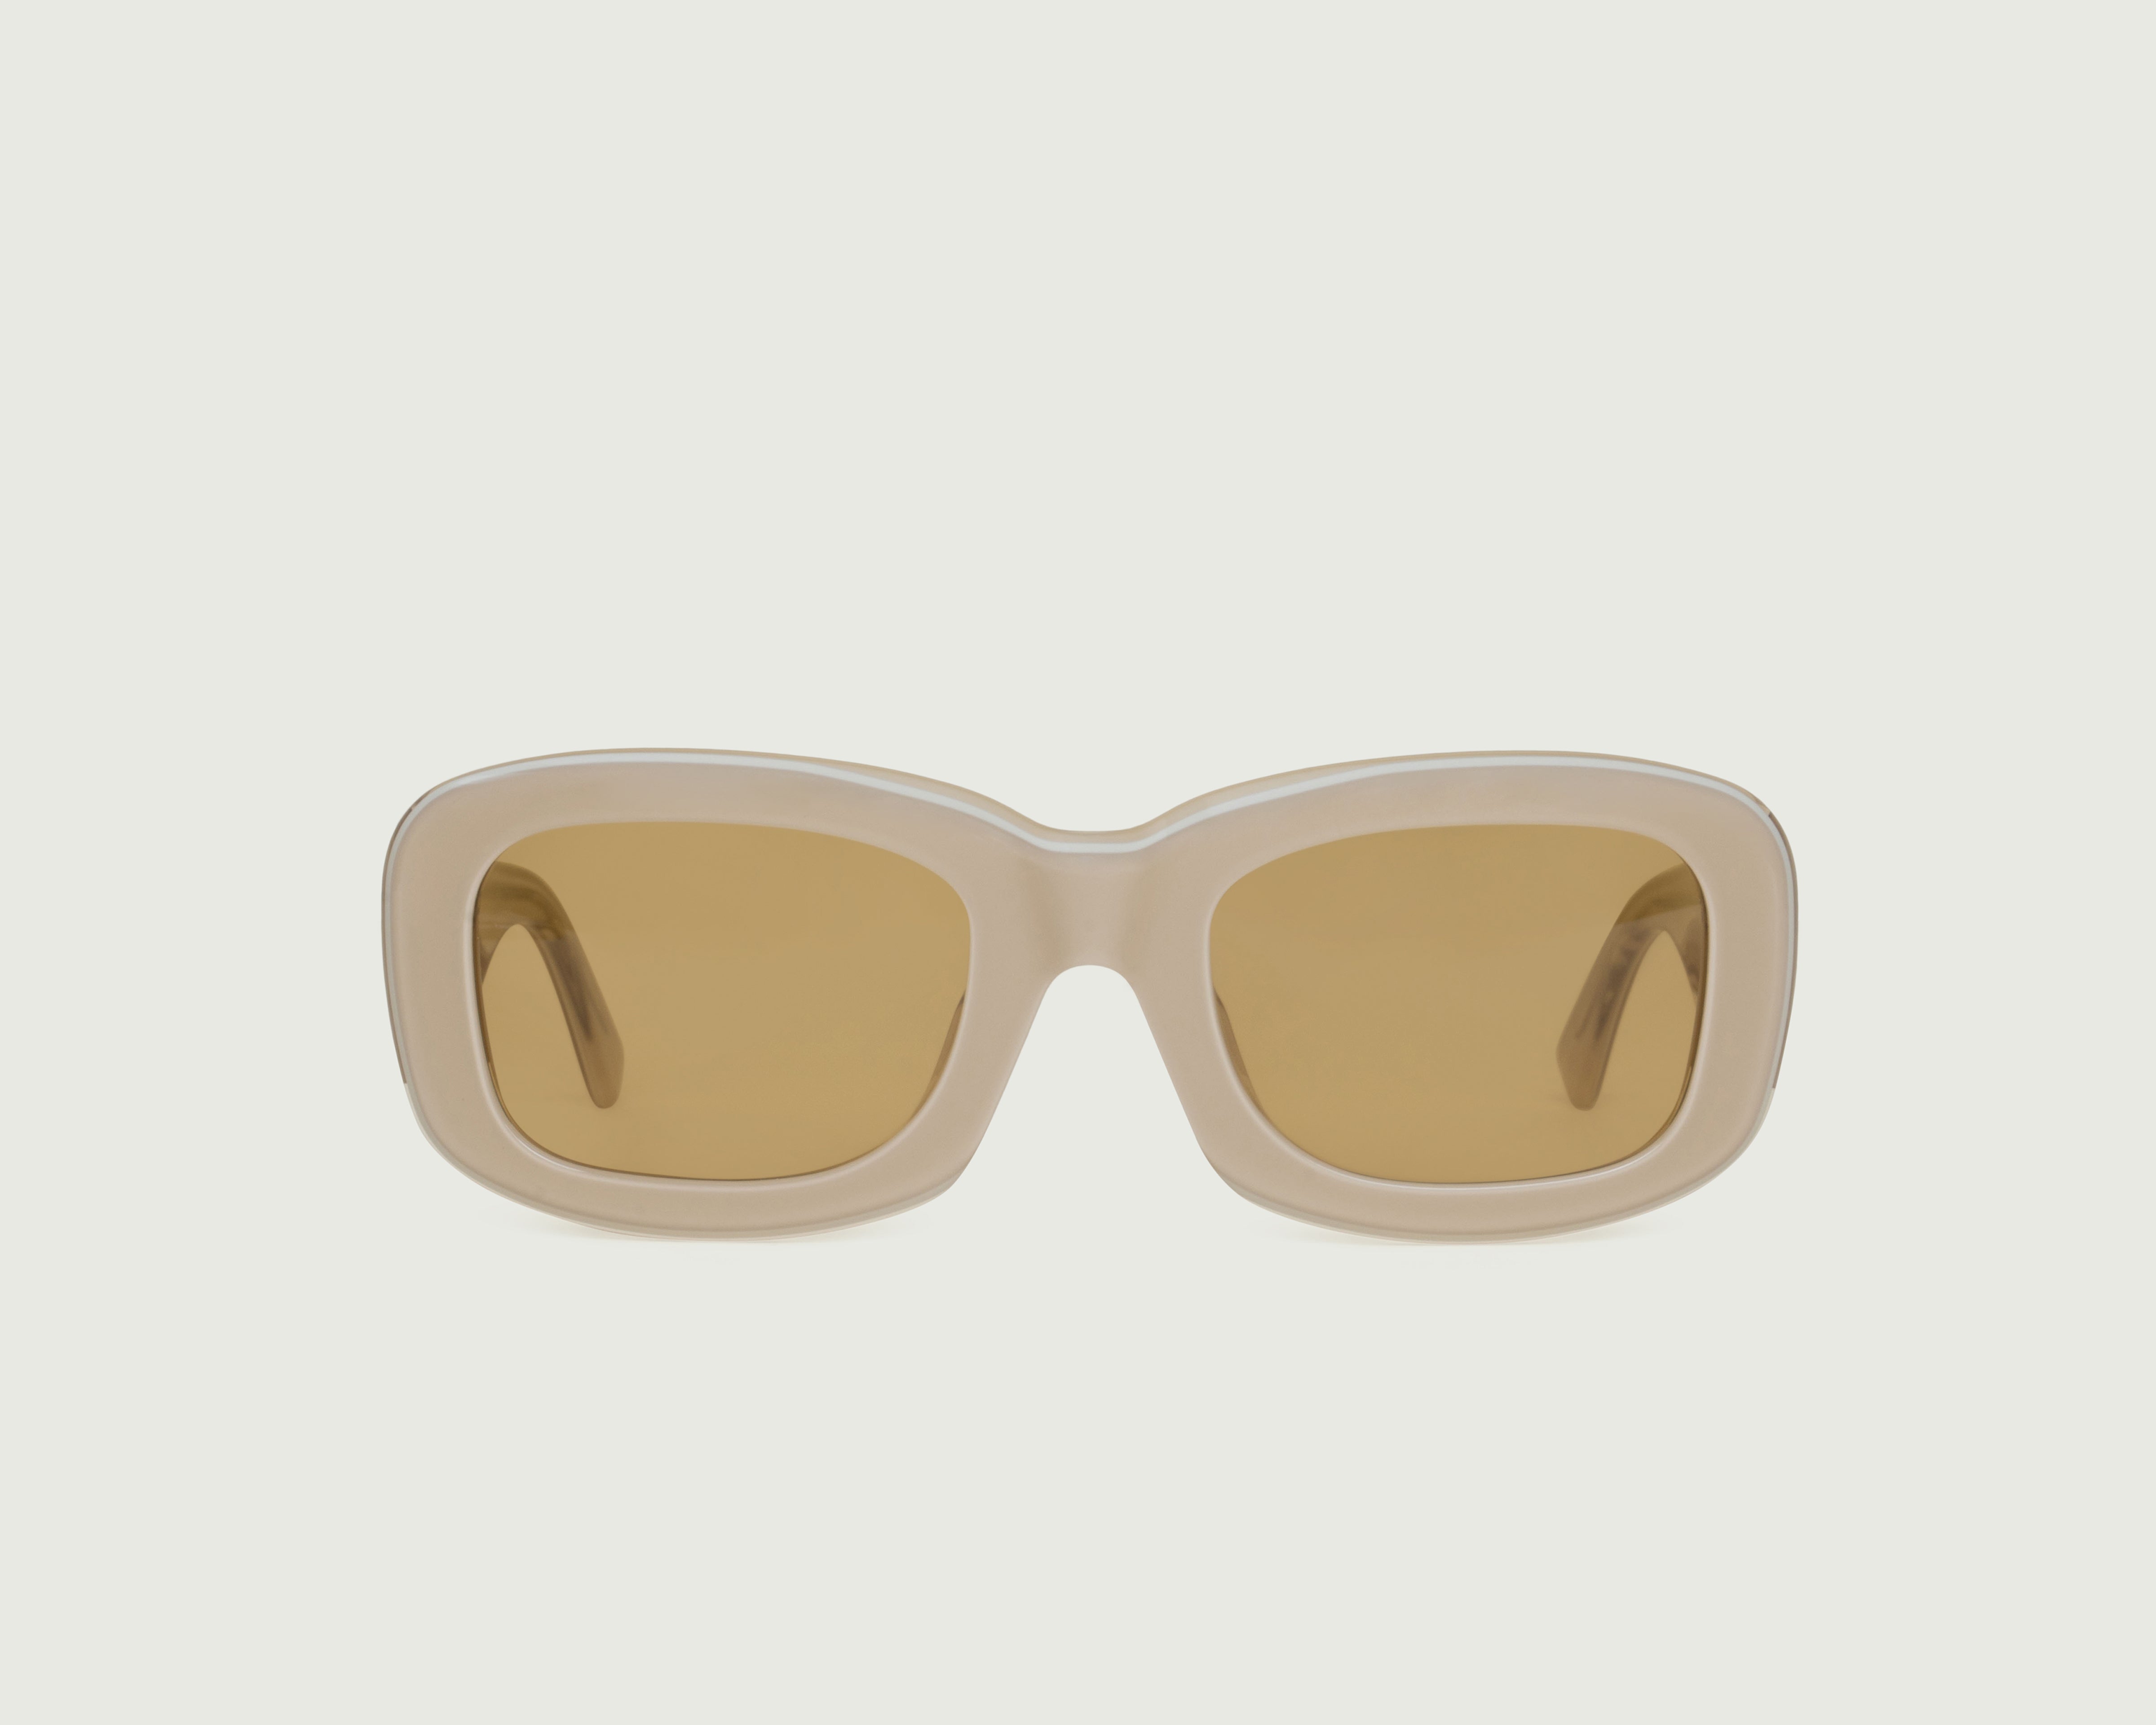 Cashmere::Liv Sunglasses square white acetate front